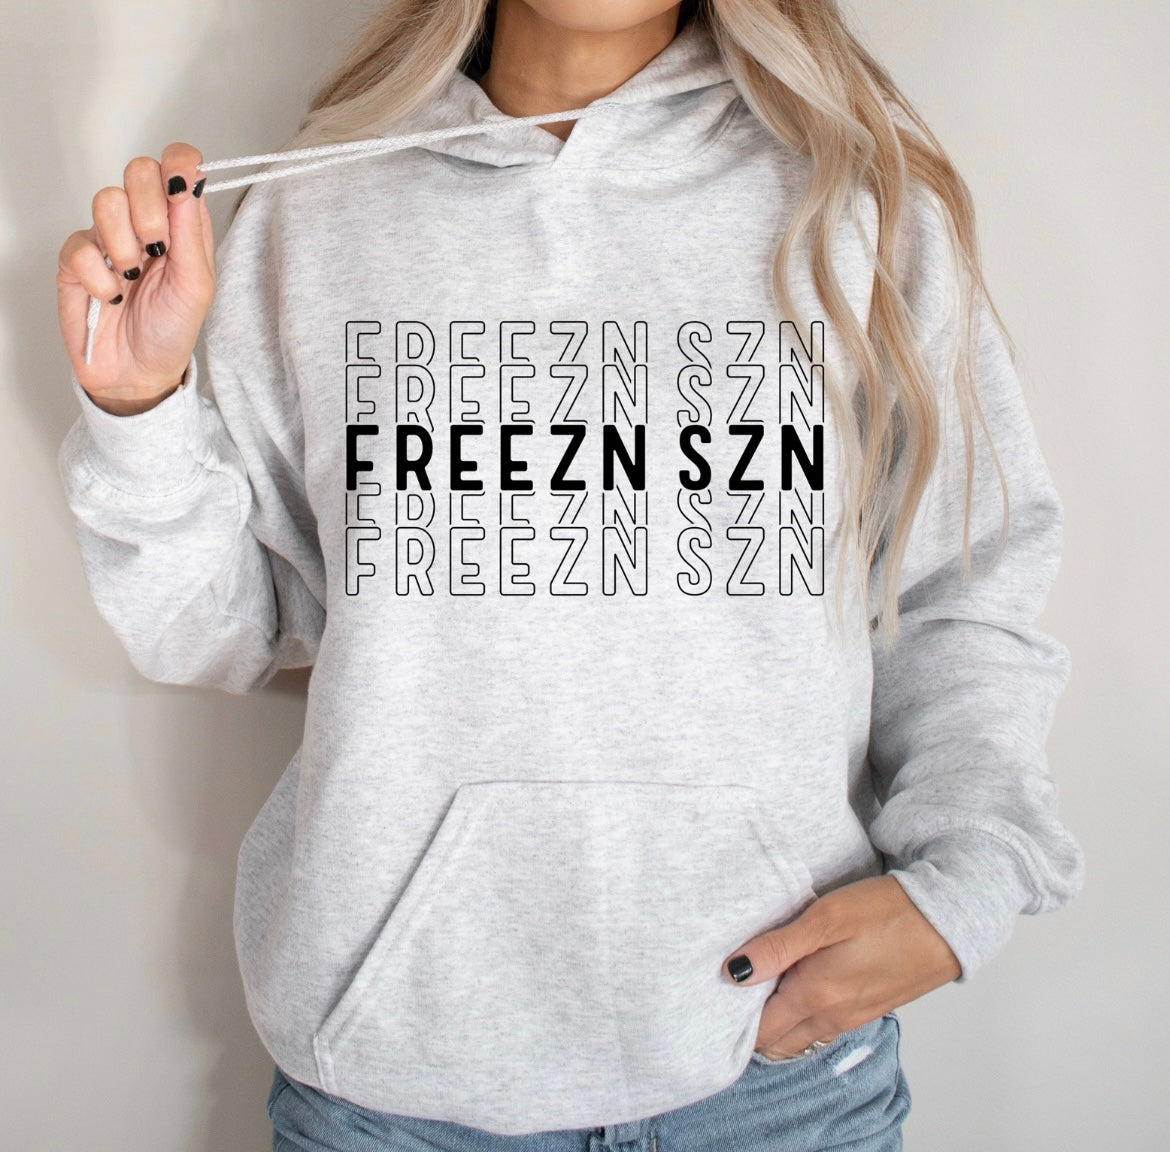 Freezes SZN